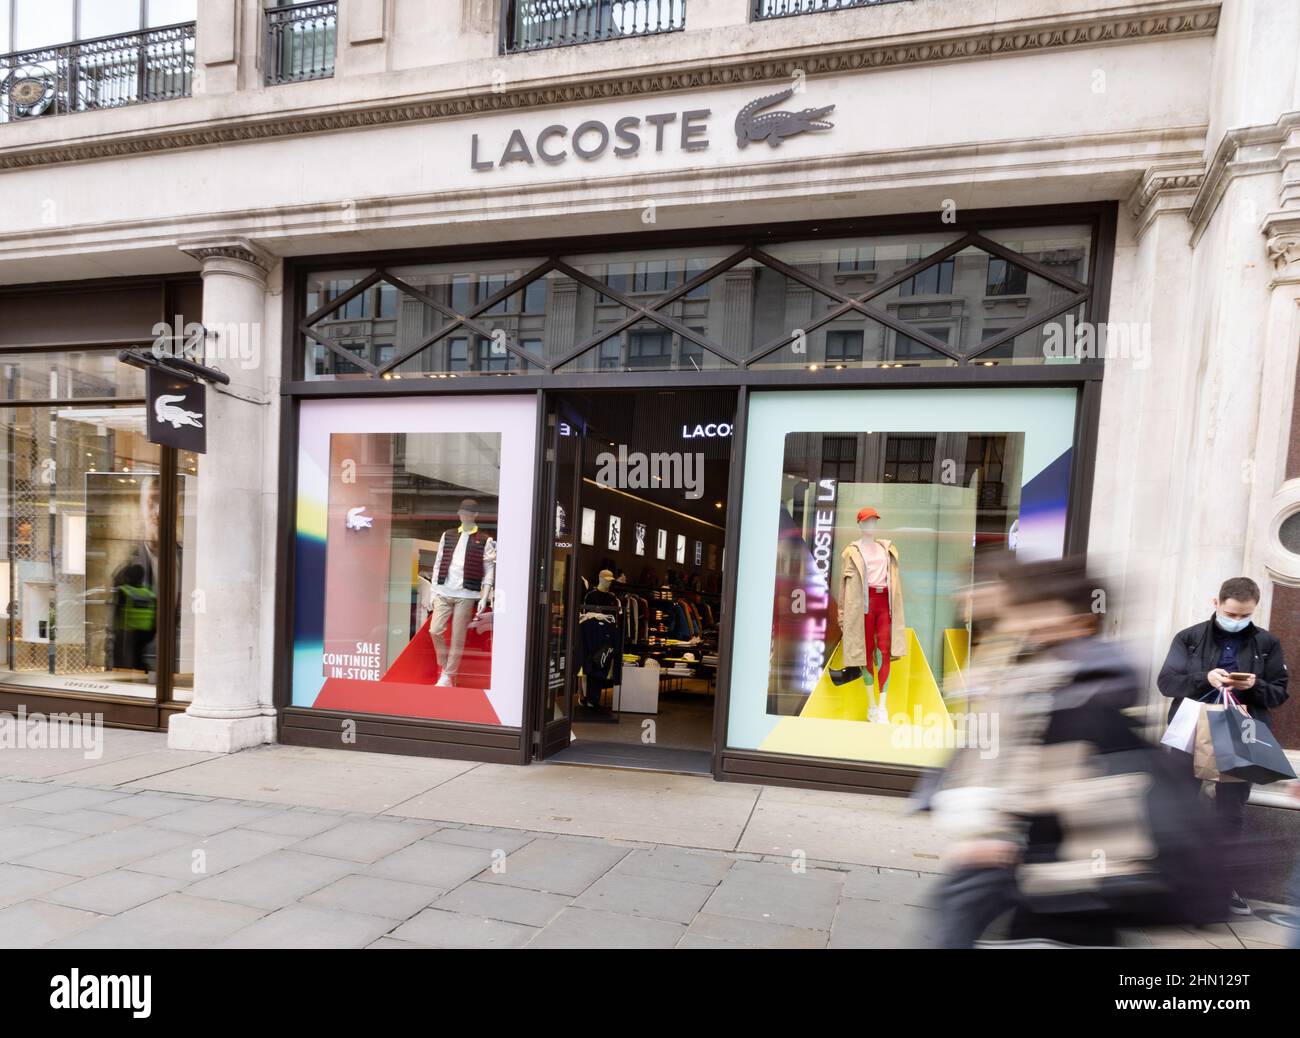 Lacoste store London; l'esterno del negozio Lacoste su Regent Street, Central London UK. Negozio di abbigliamento e moda francese Lacoste S.A. Foto Stock